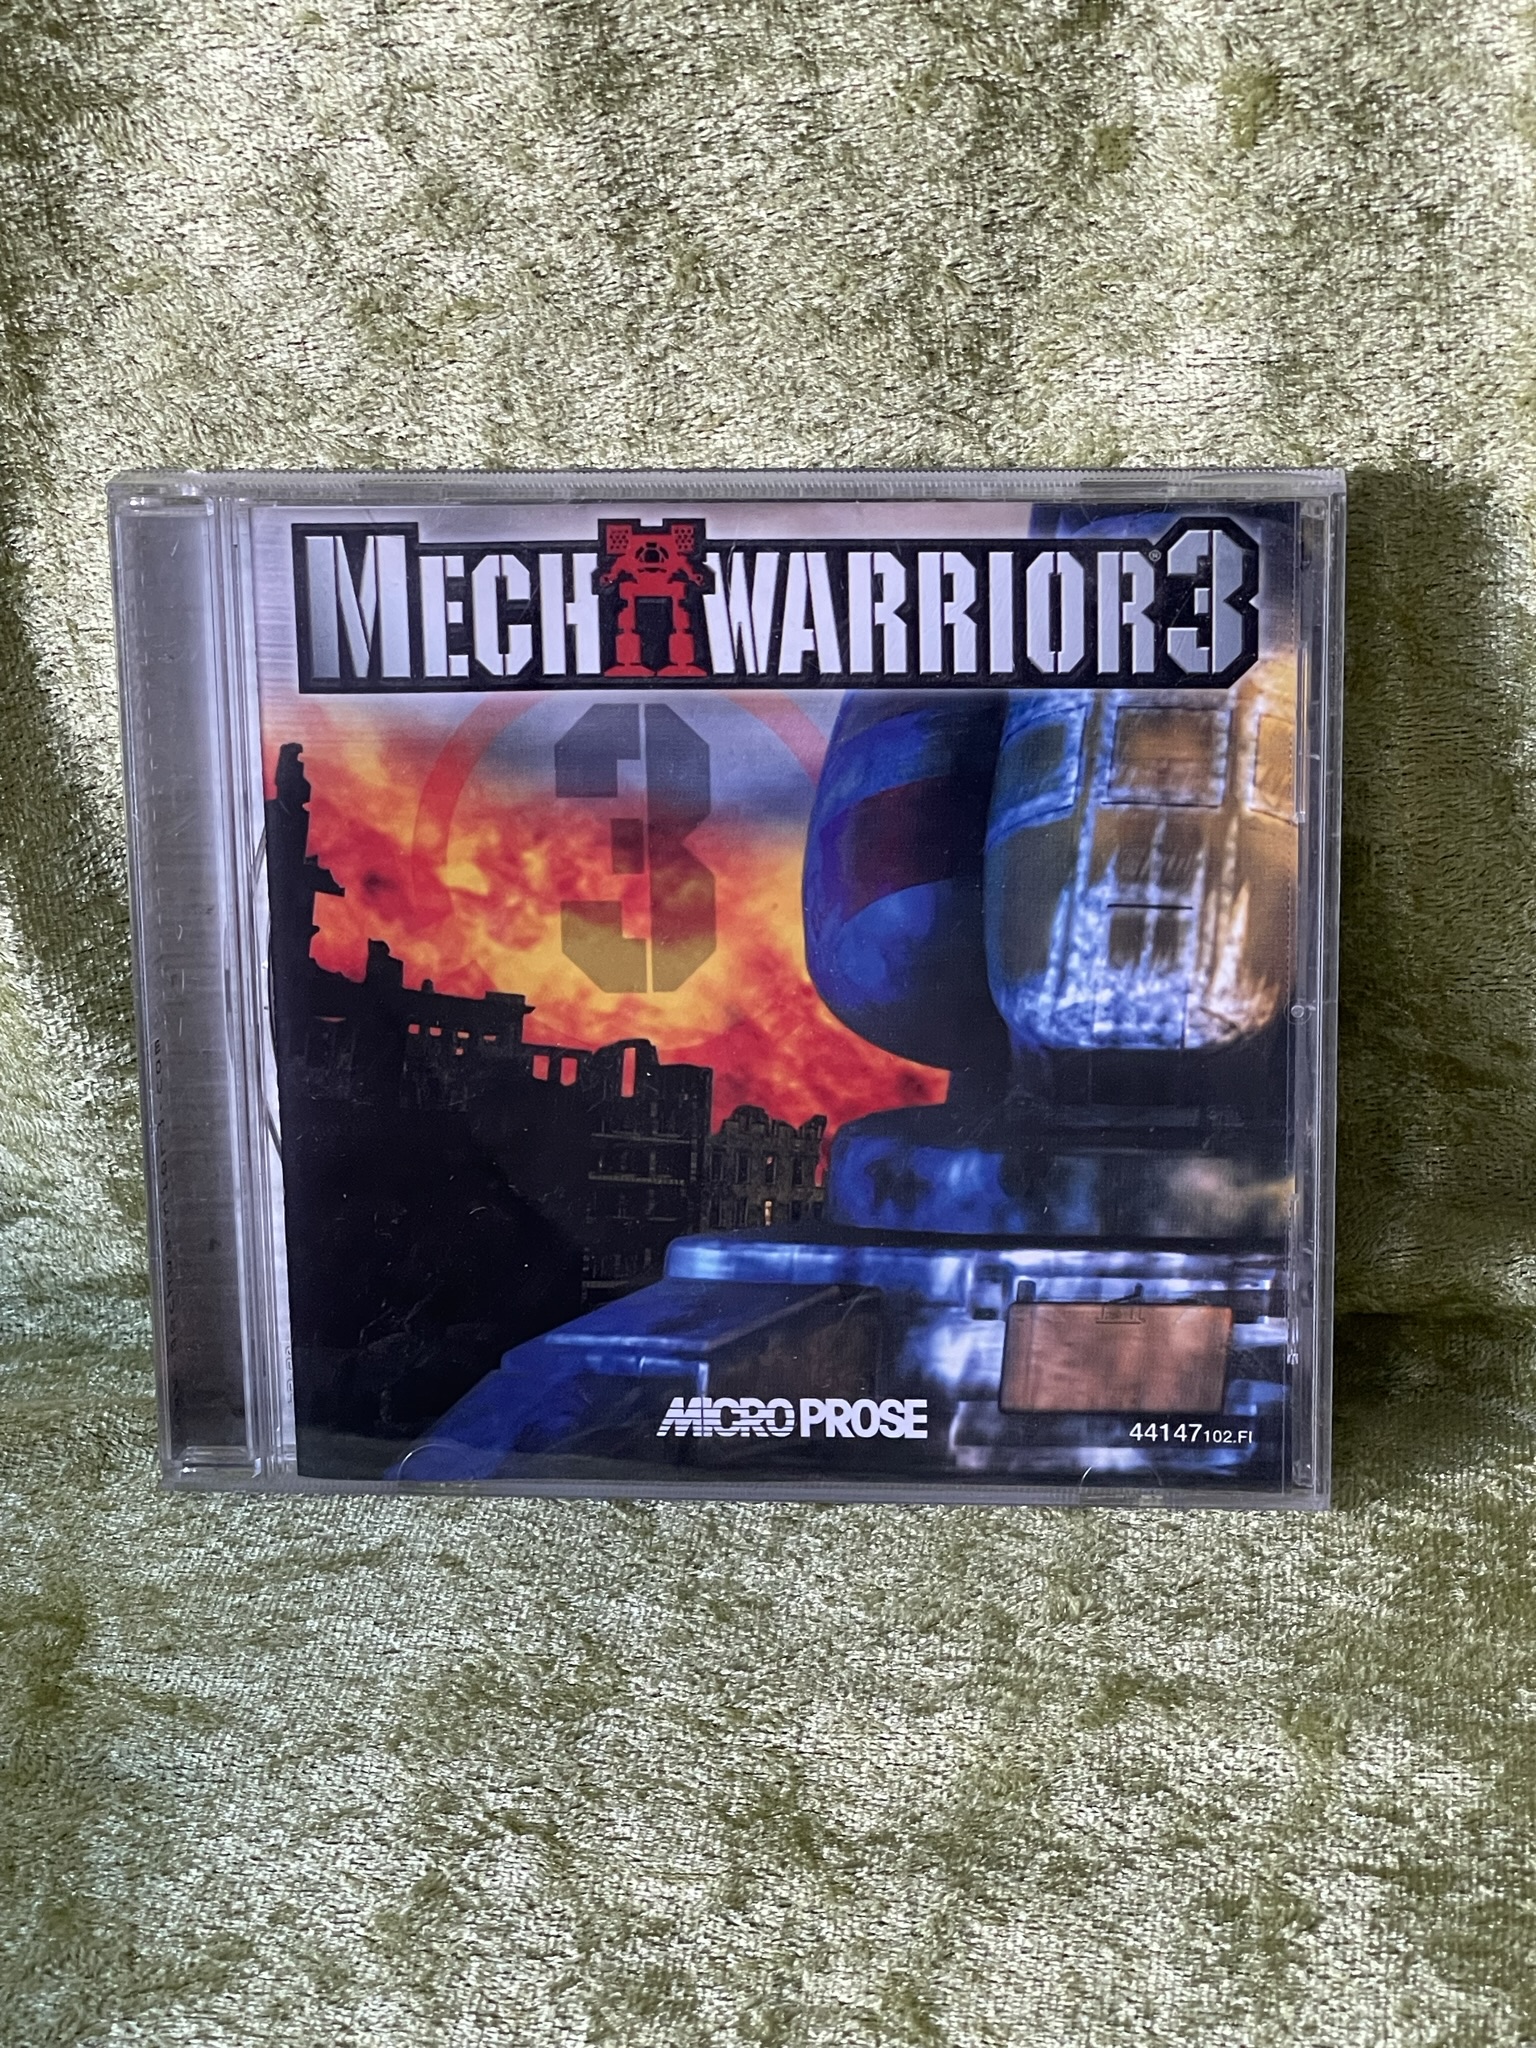 Mech Warrior 3